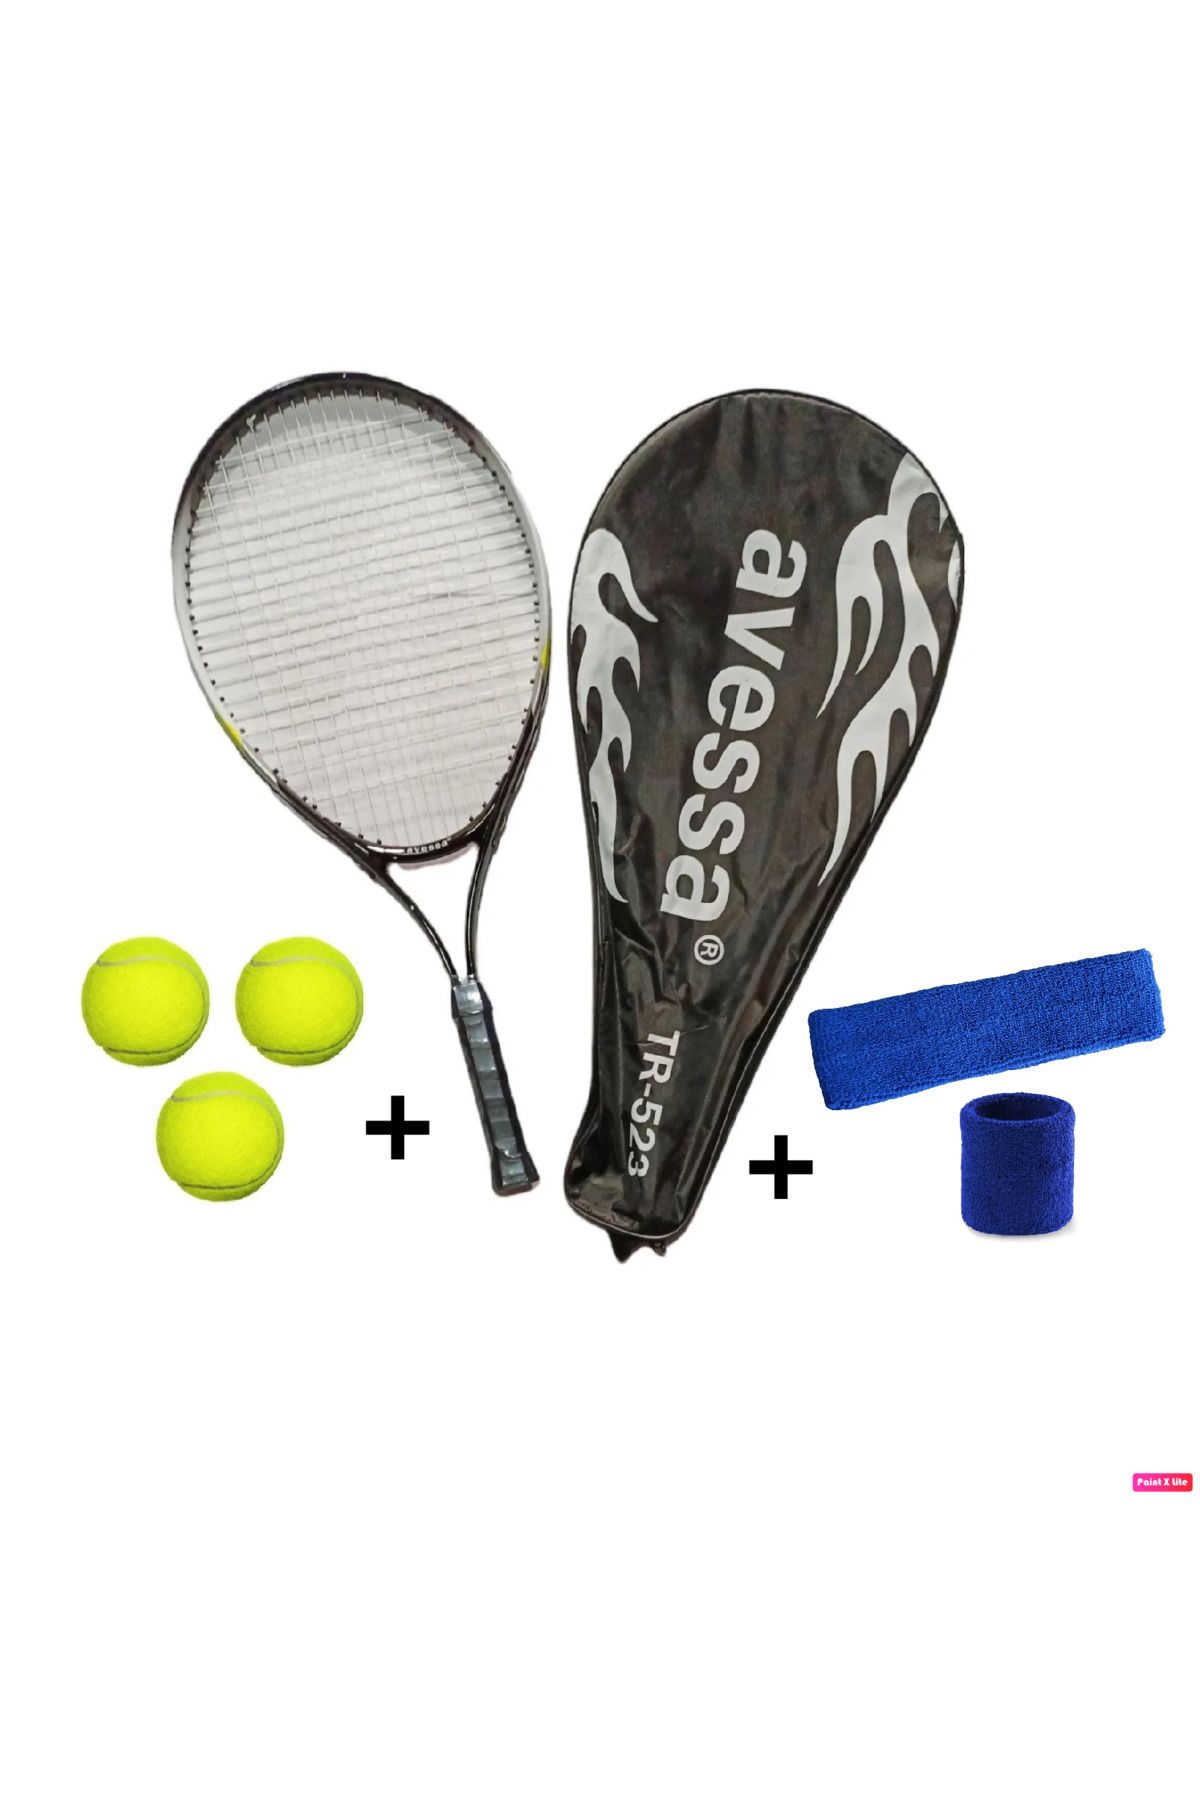 Avessa 4'lü Tenisçi Seti Tr-523 23 Inç 200 Gr + 3 Adet Tenis Topu + Havlu Kafa Bandı Ve Bileklik